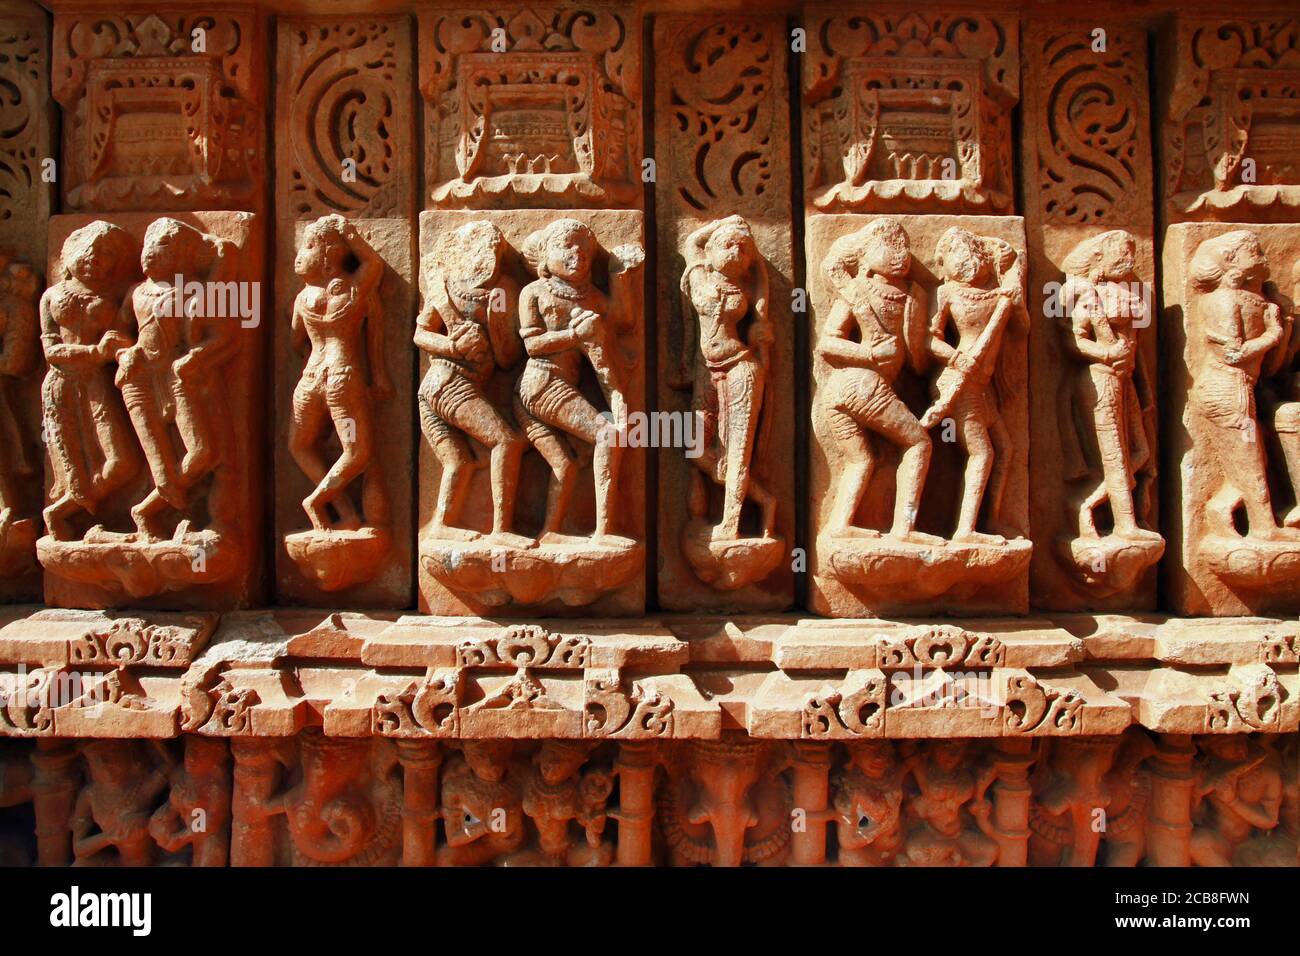 Wandsteinschnitzereien im indischen Tempel Sahastra Bahu (SAS-Bahu) bei Nagda, Udaipur, Rajasthan, Indien. Stockfoto